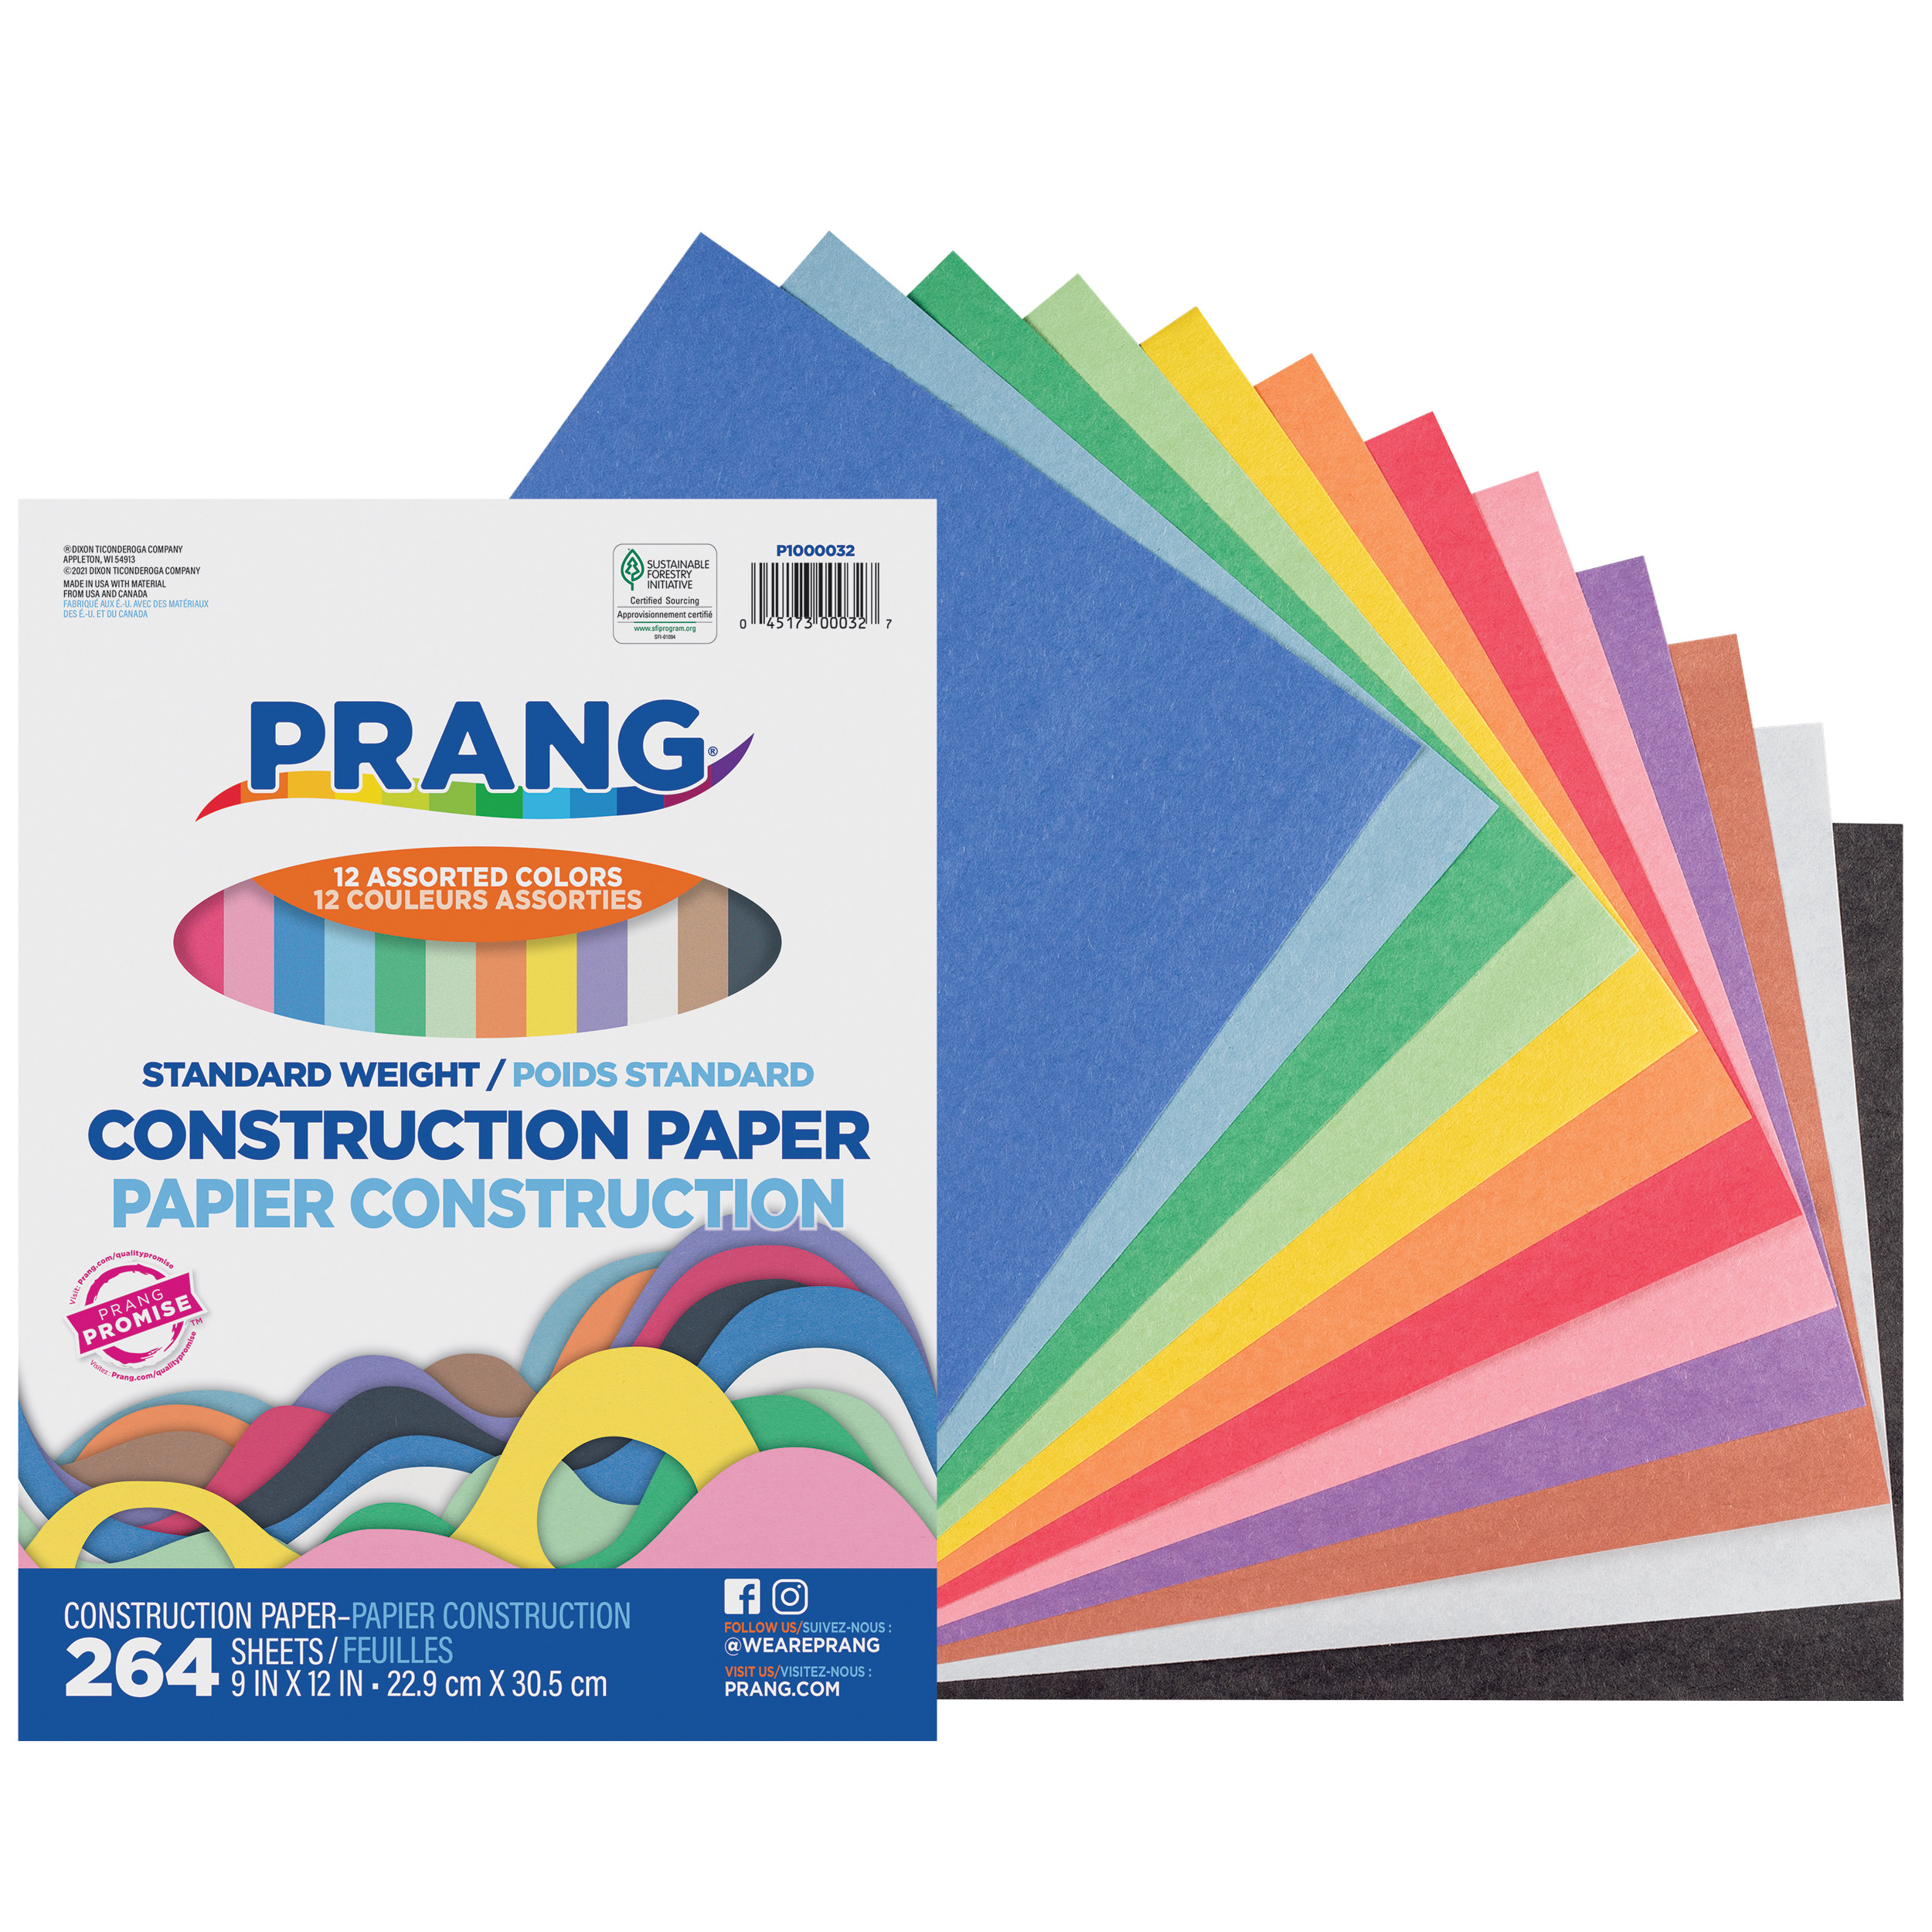 Standard Weight Construction Paper - Prang